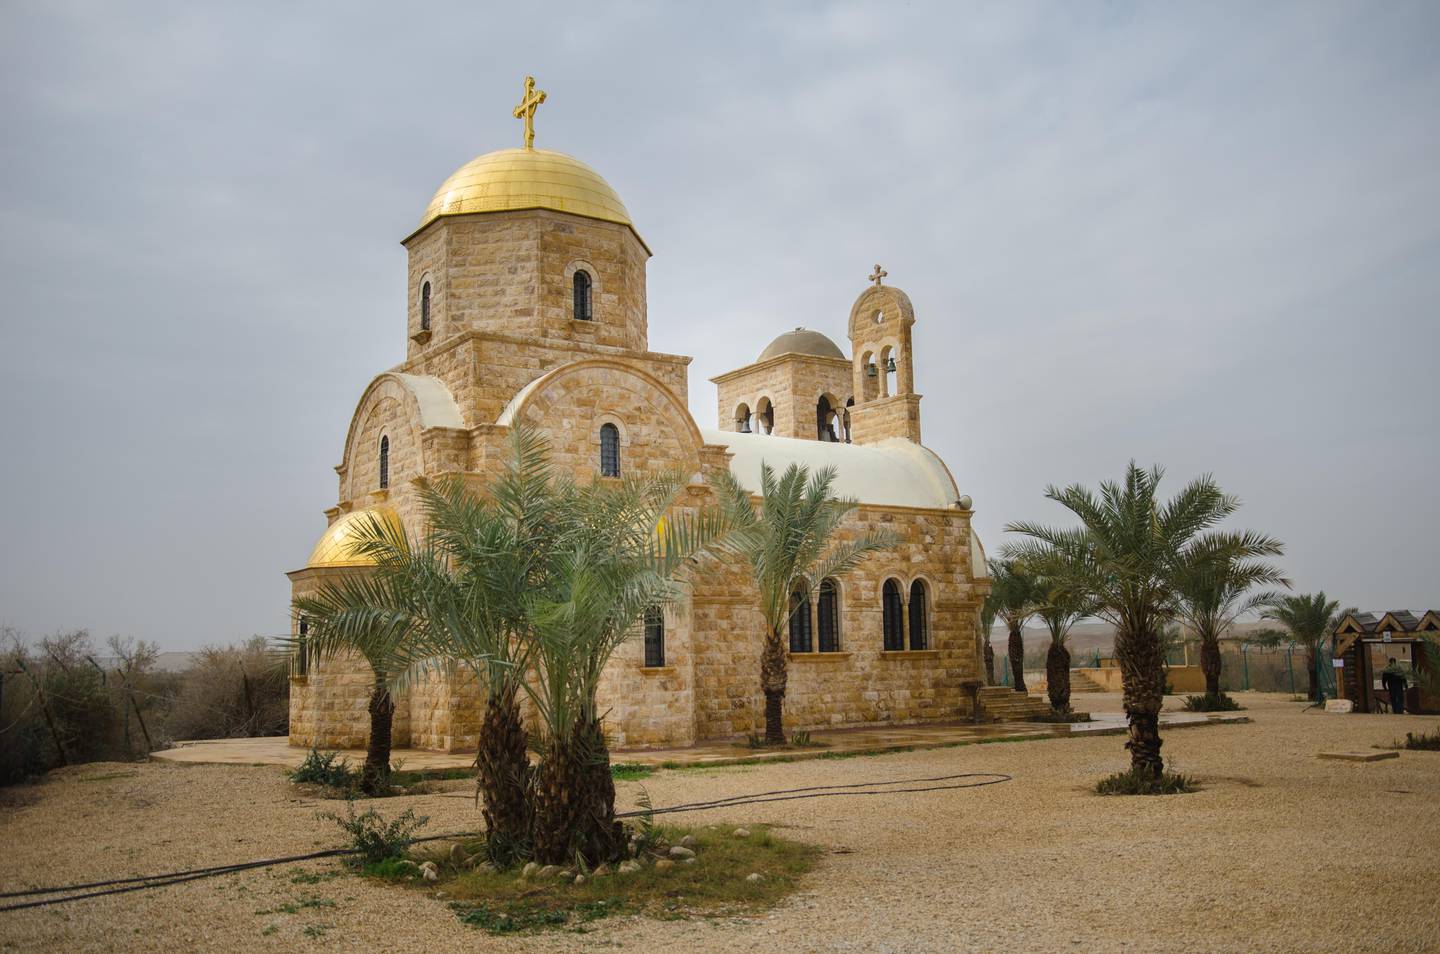 Gudshus: Denne nybygde gresk-ortodokse kirken ligger langs Jordan-elven. Det er mange religiøse bygninger i området.